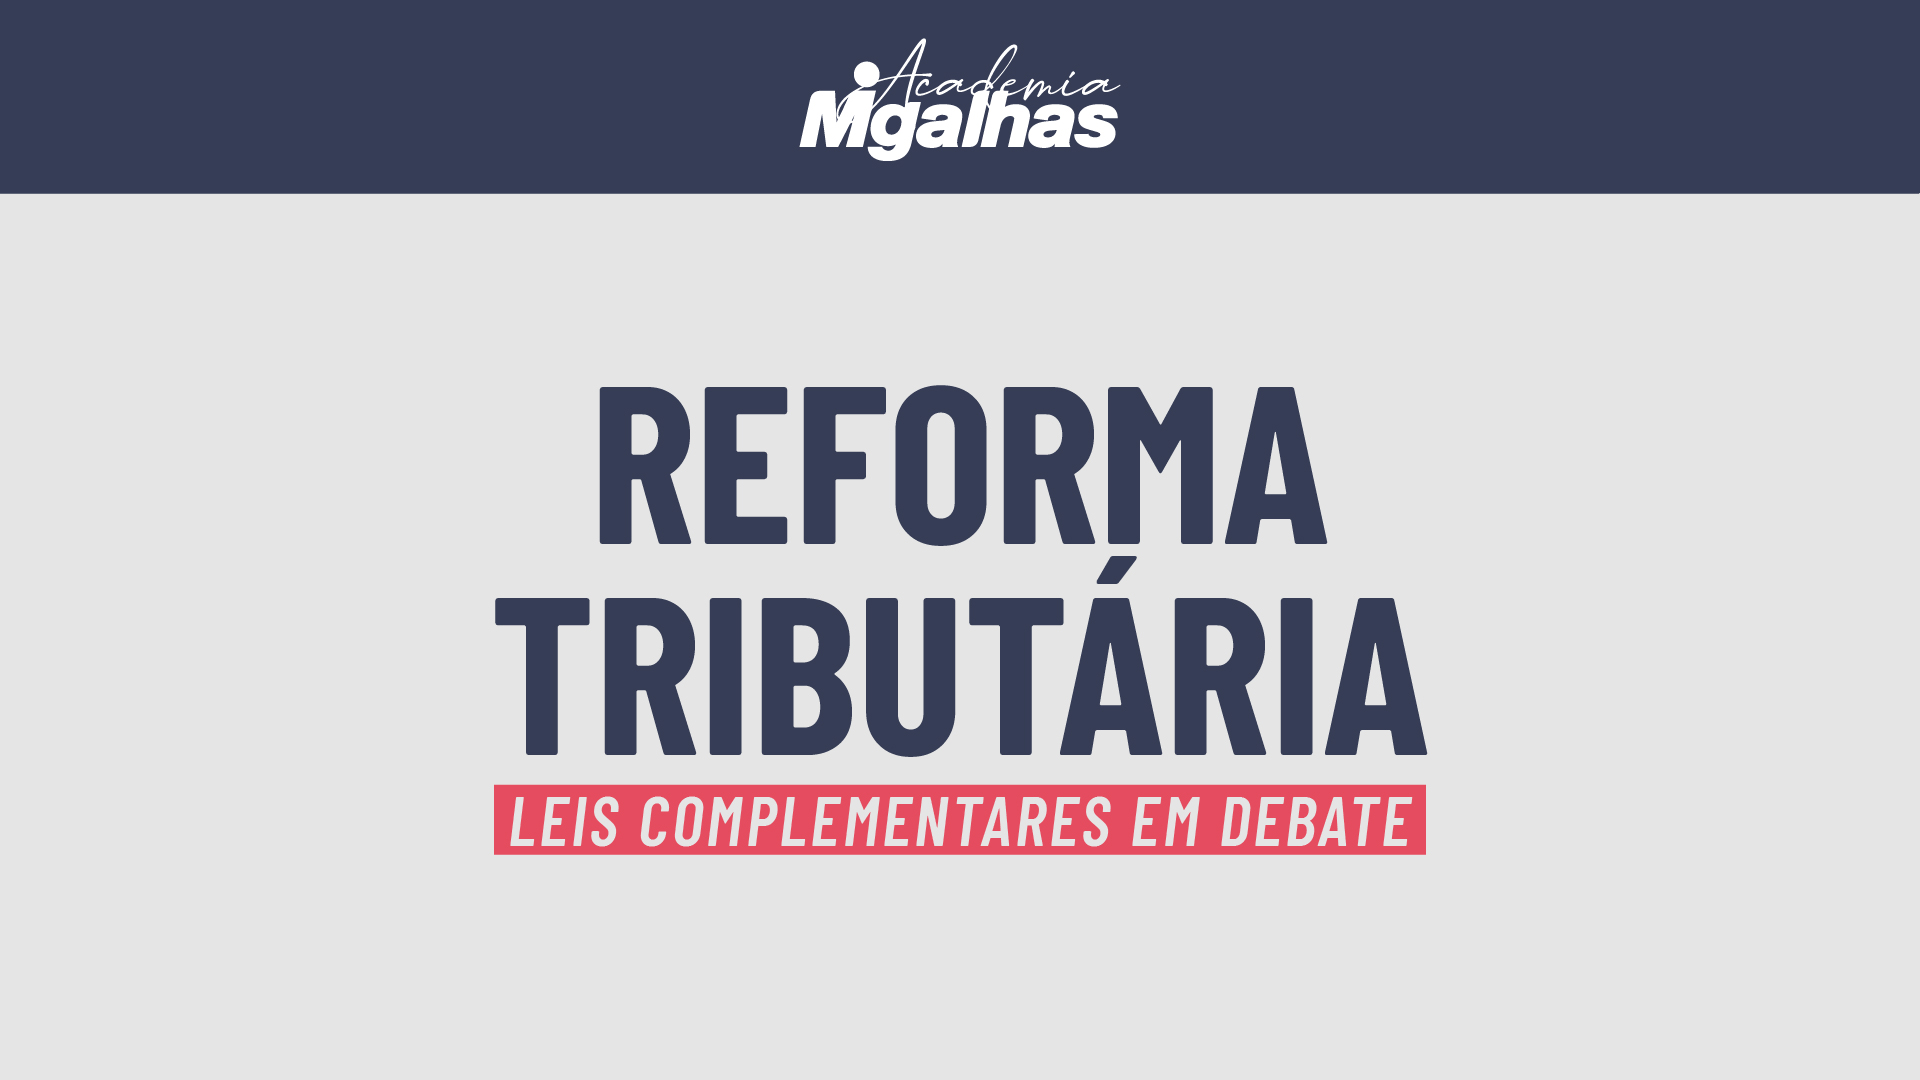 Reforma Tributária - Leis Complementares em debate